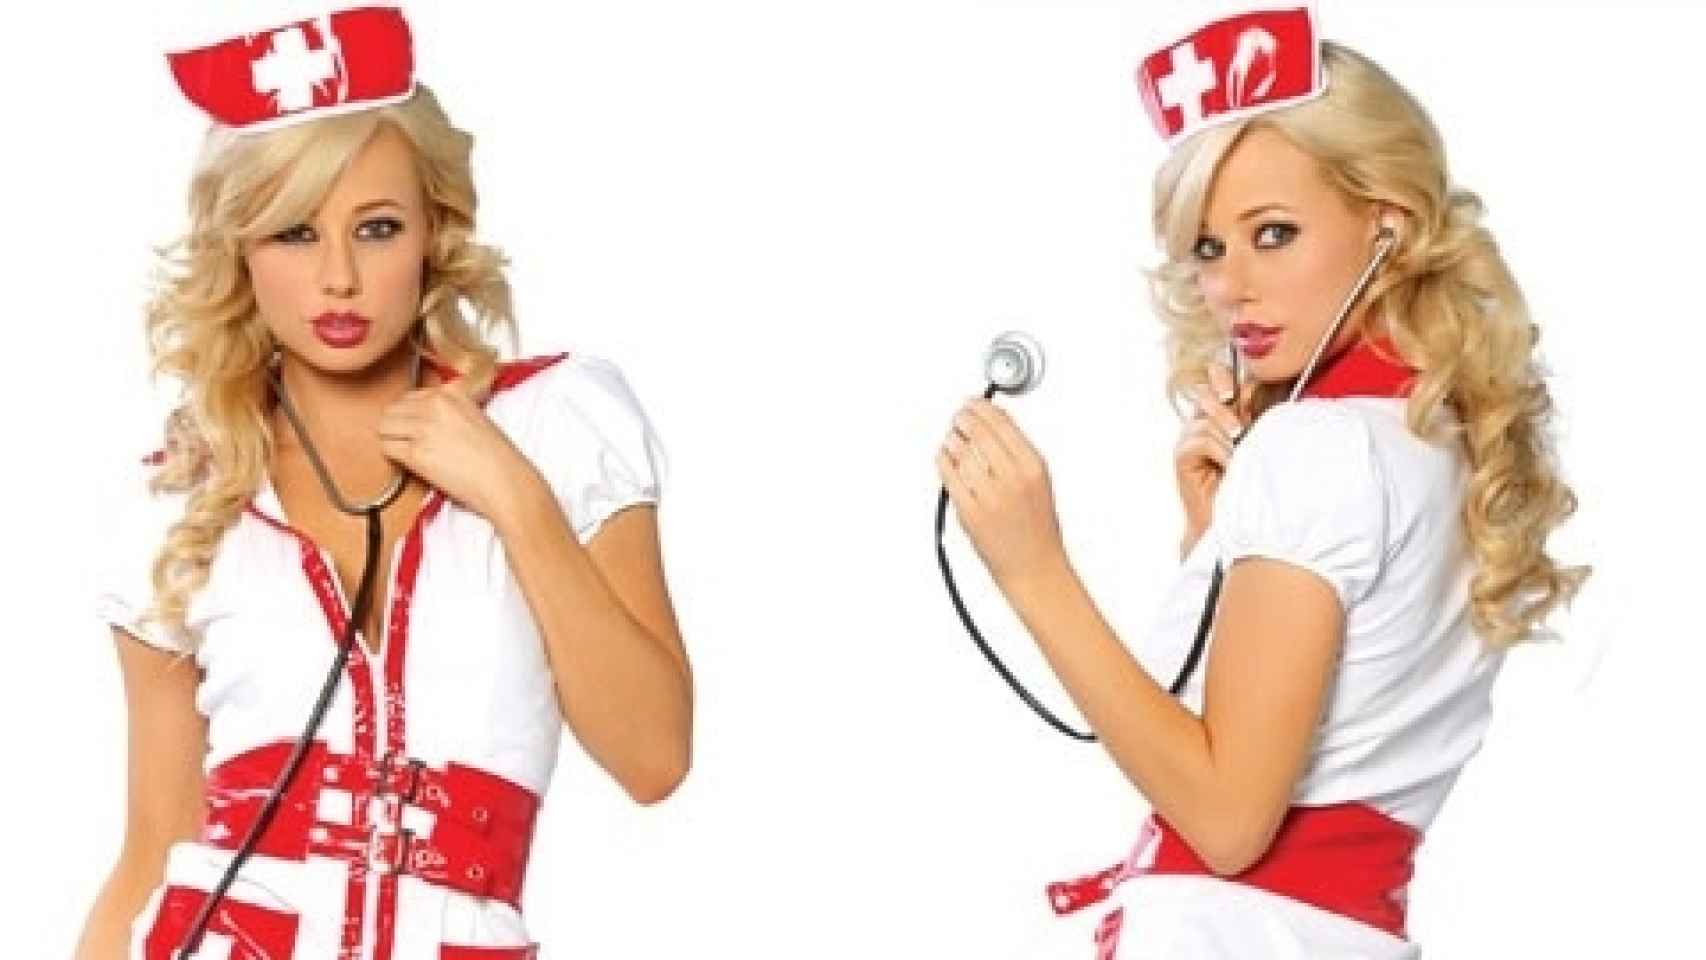 Continuamente fuego Burro Las enfermeras no quieren ser 'sexis' ni 'sangrientas' y piden la retirada  de estos disfraces ofensivos